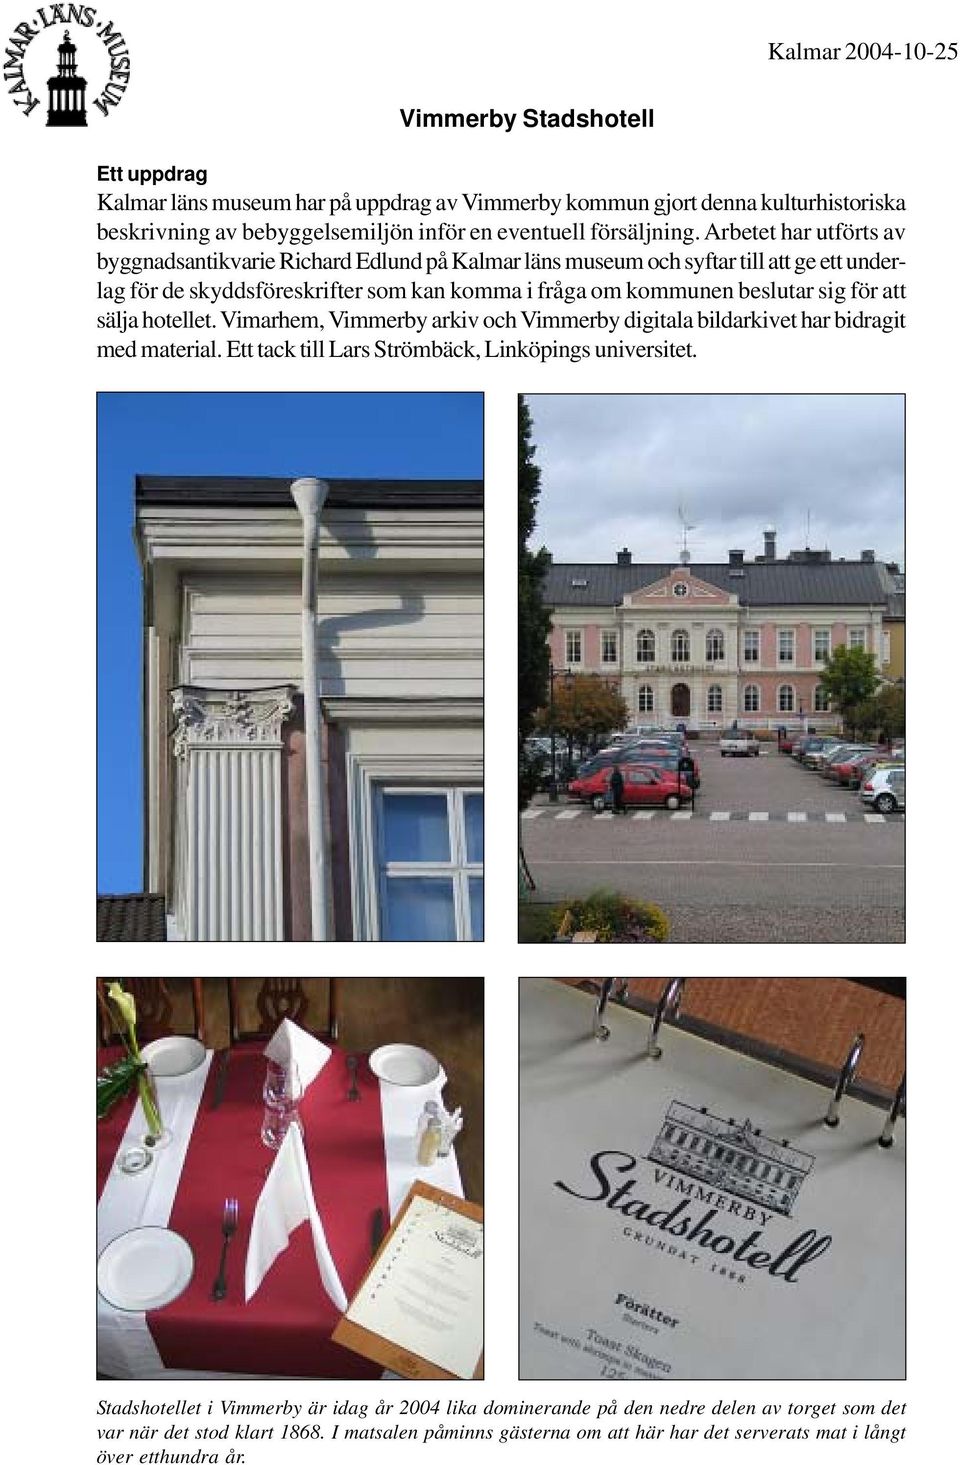 Arbetet har utförts av byggnadsantikvarie Richard Edlund på Kalmar läns museum och syftar till att ge ett underlag för de skyddsföreskrifter som kan komma i fråga om kommunen beslutar sig